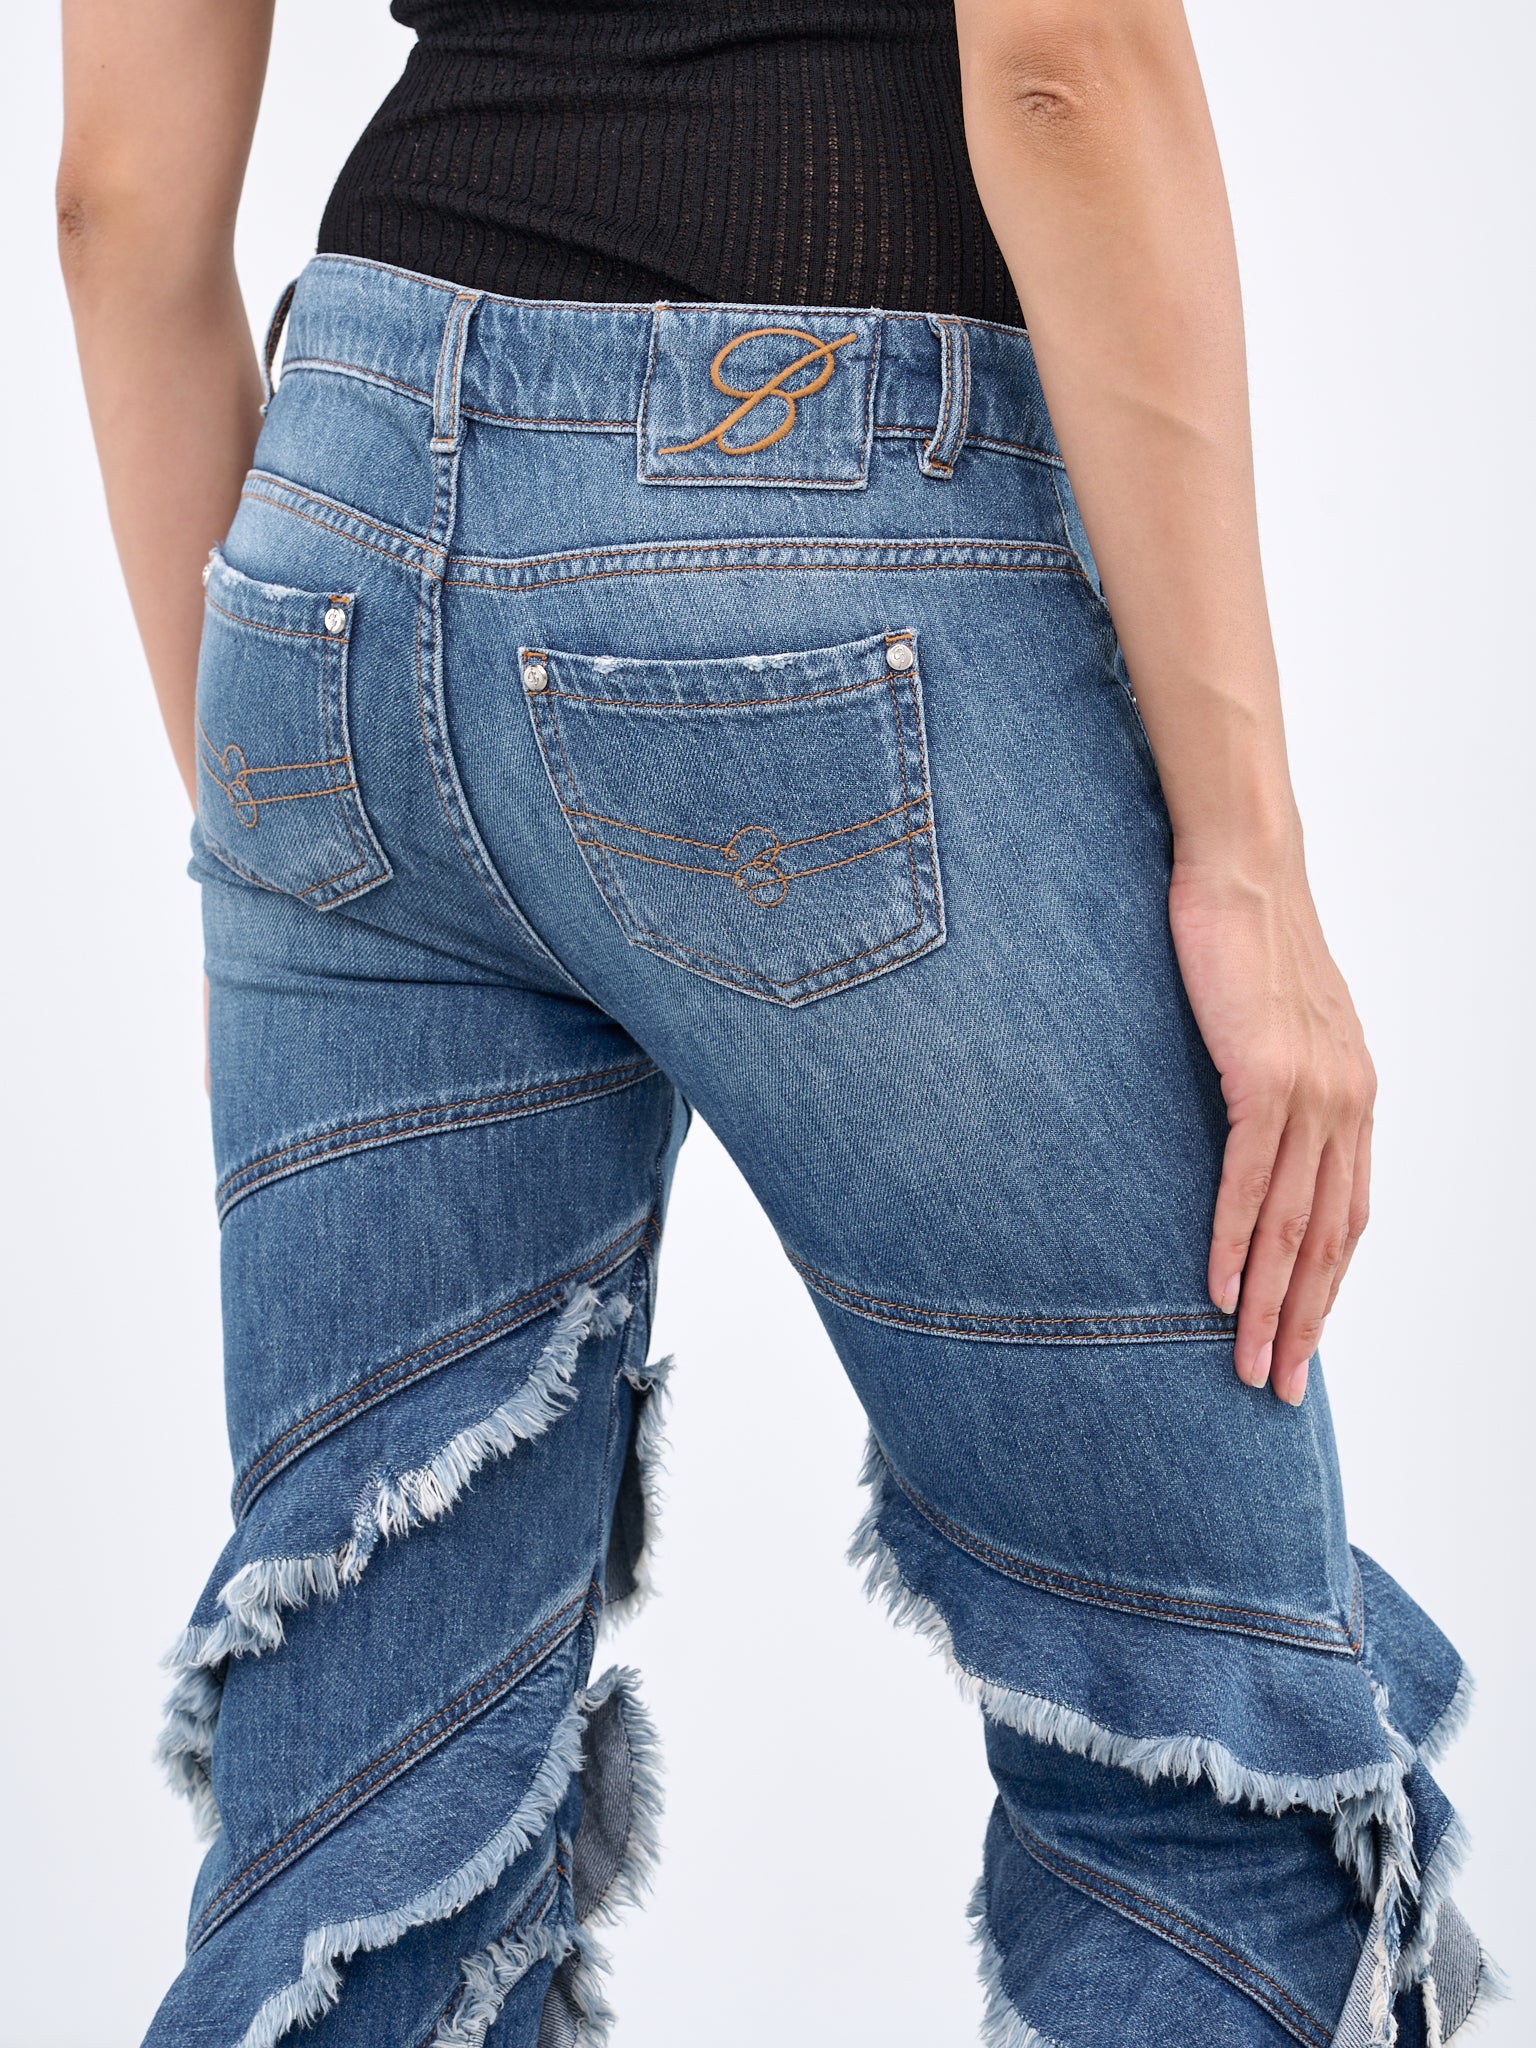 BLUMARINE Ruffle Jeans | H.Lorenzo - detail 1